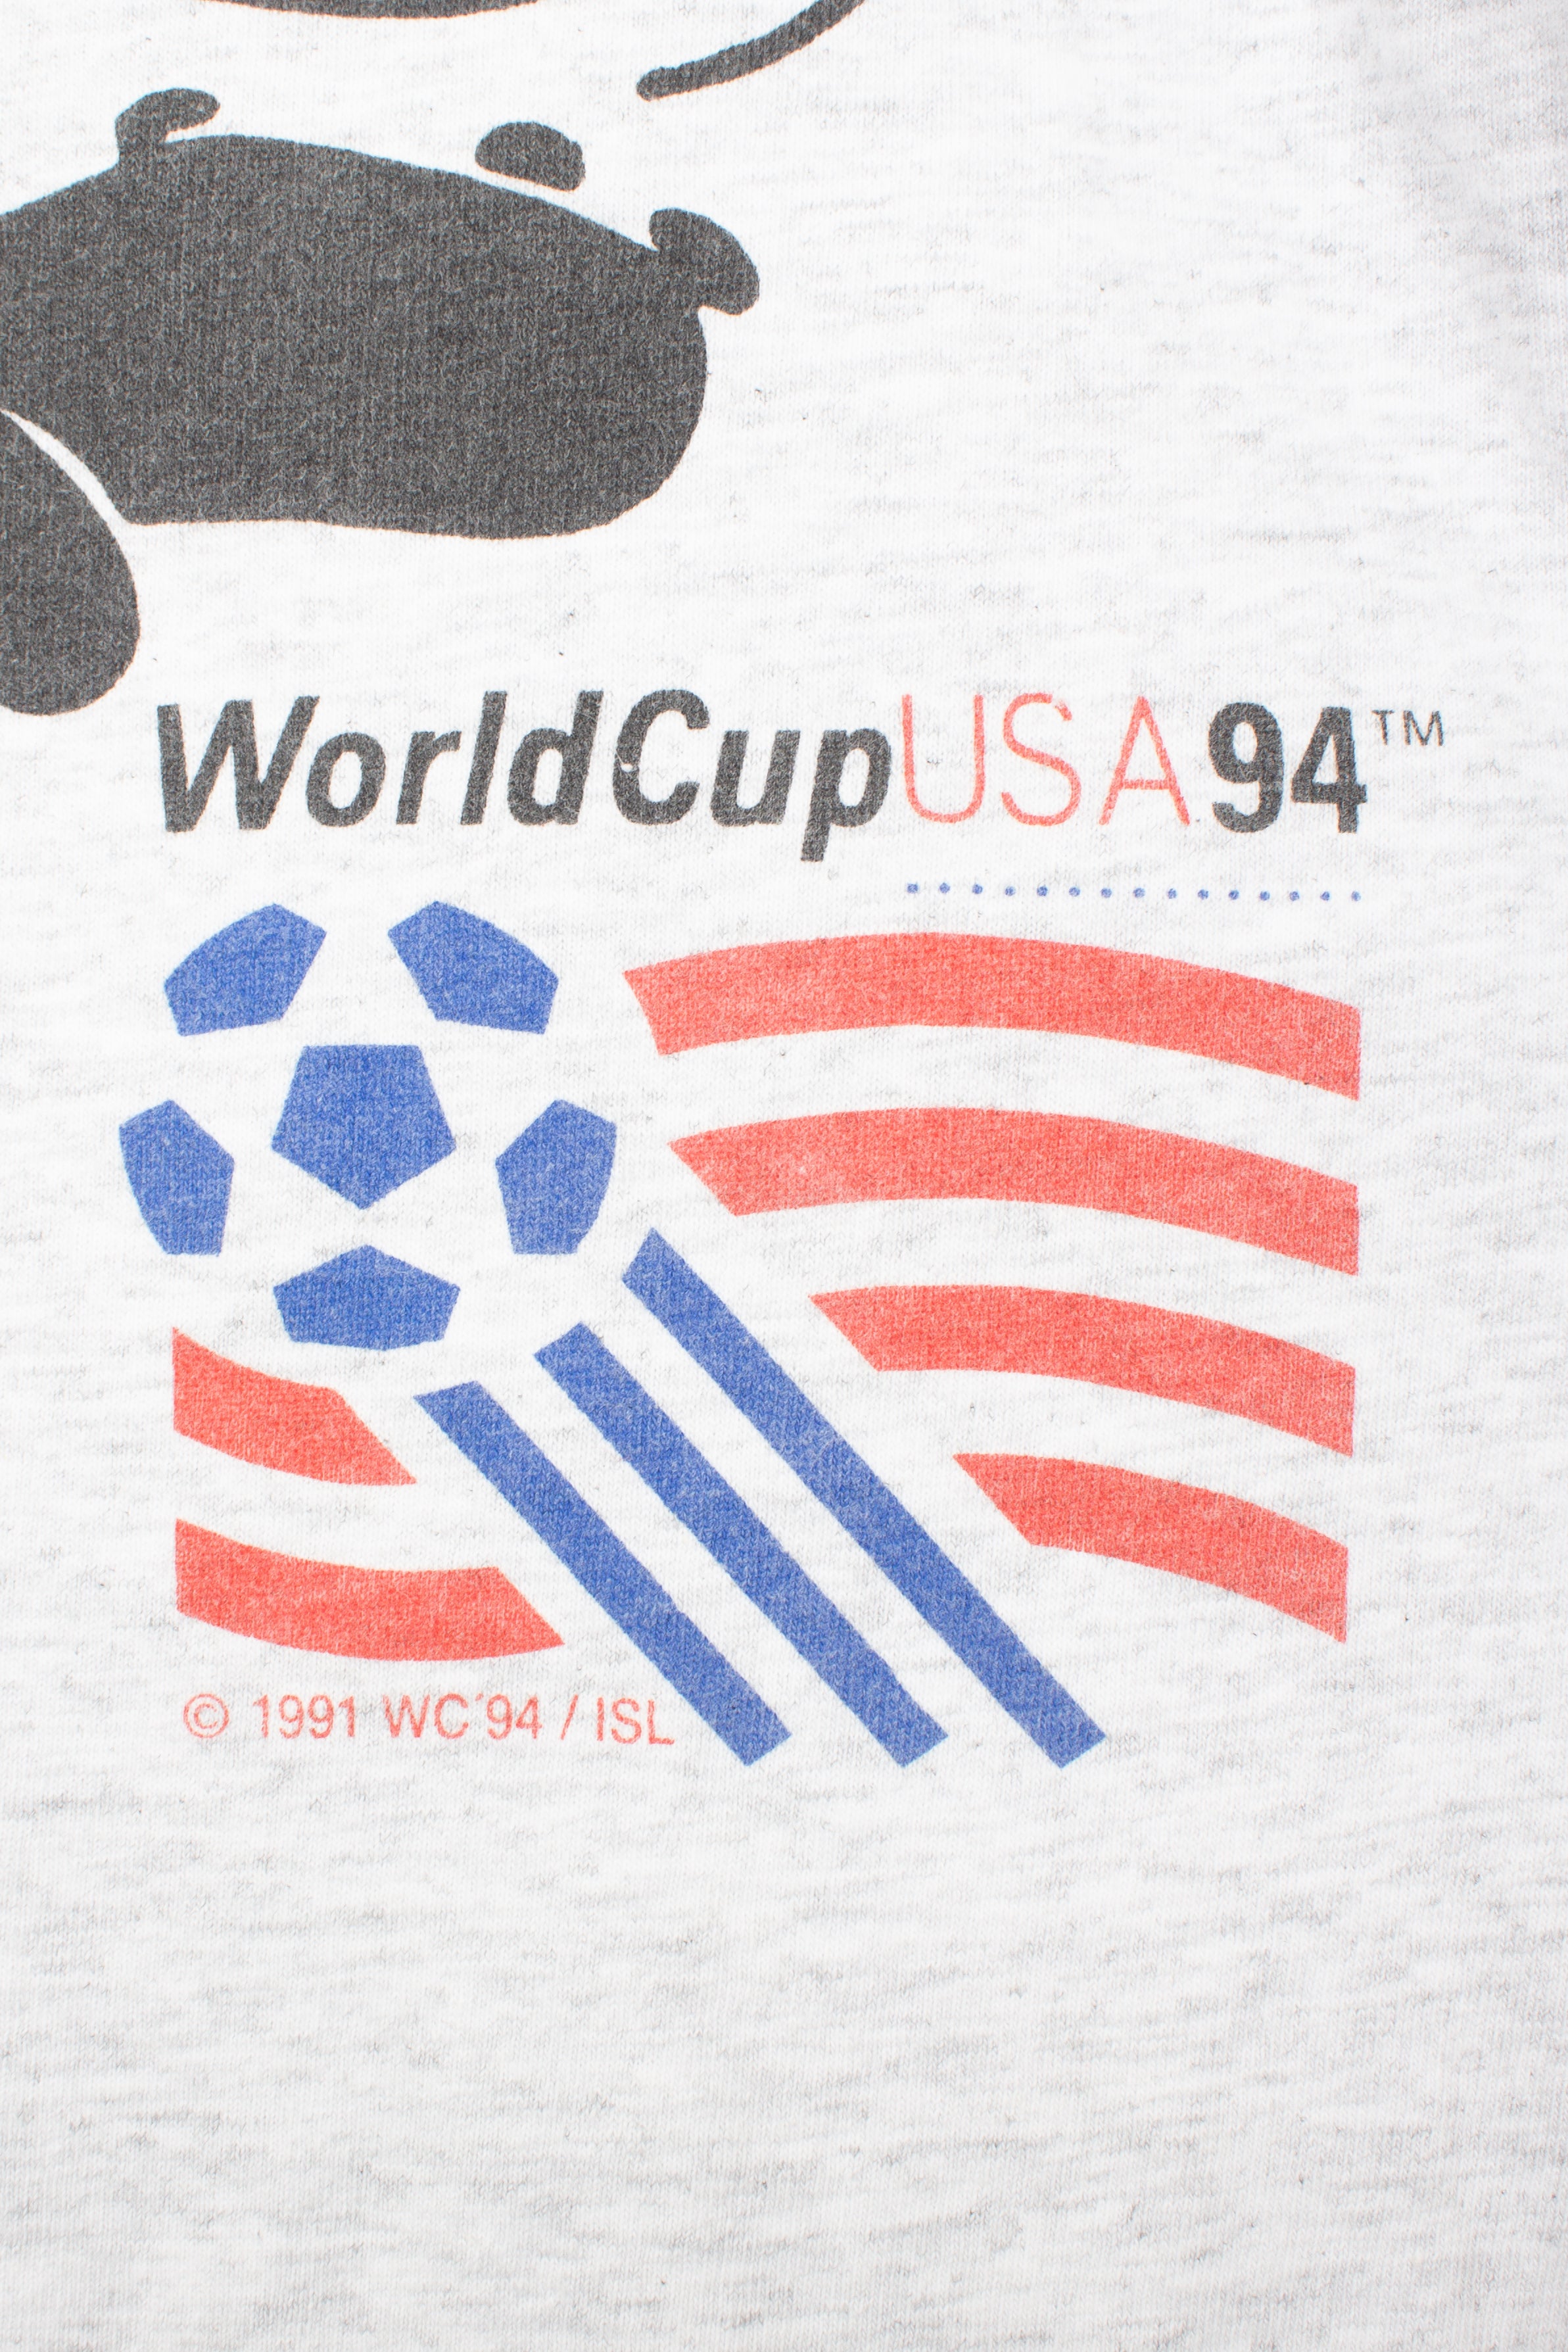 USA 1994 World Cup T-Shirt (M)